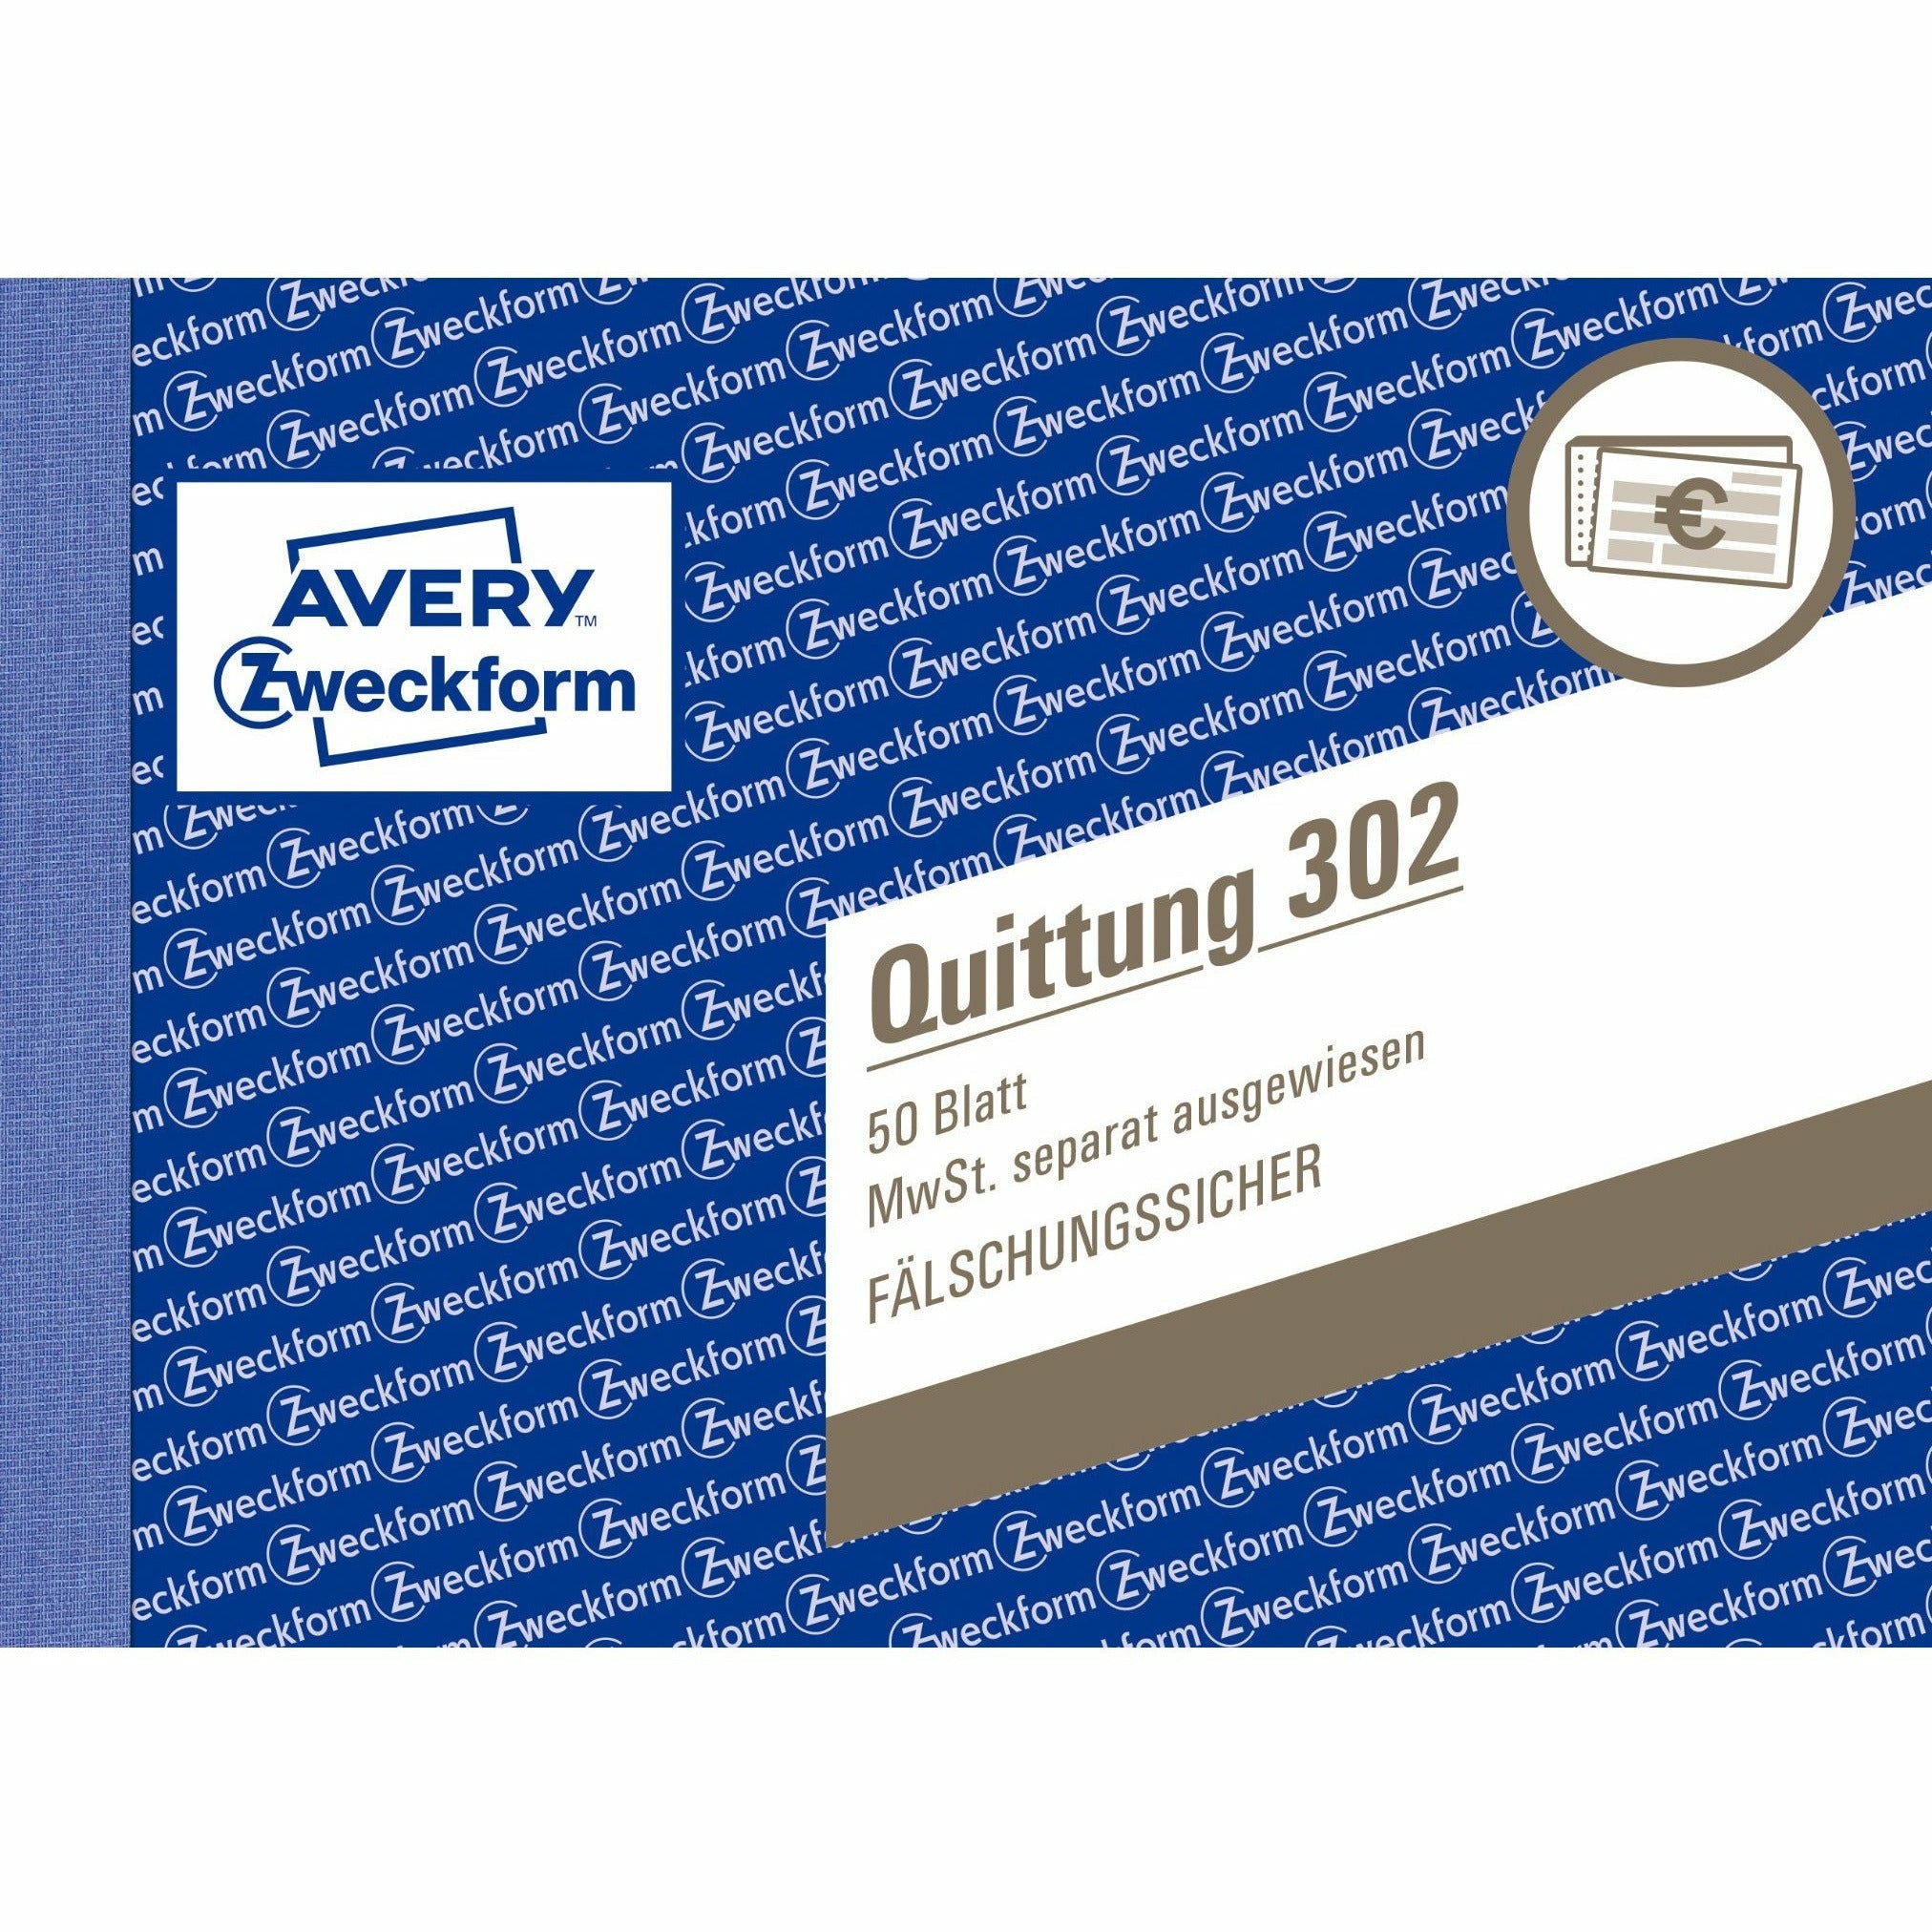 Avery-Zweckform | Quittung MwSt. separat ausgewiesen | 302